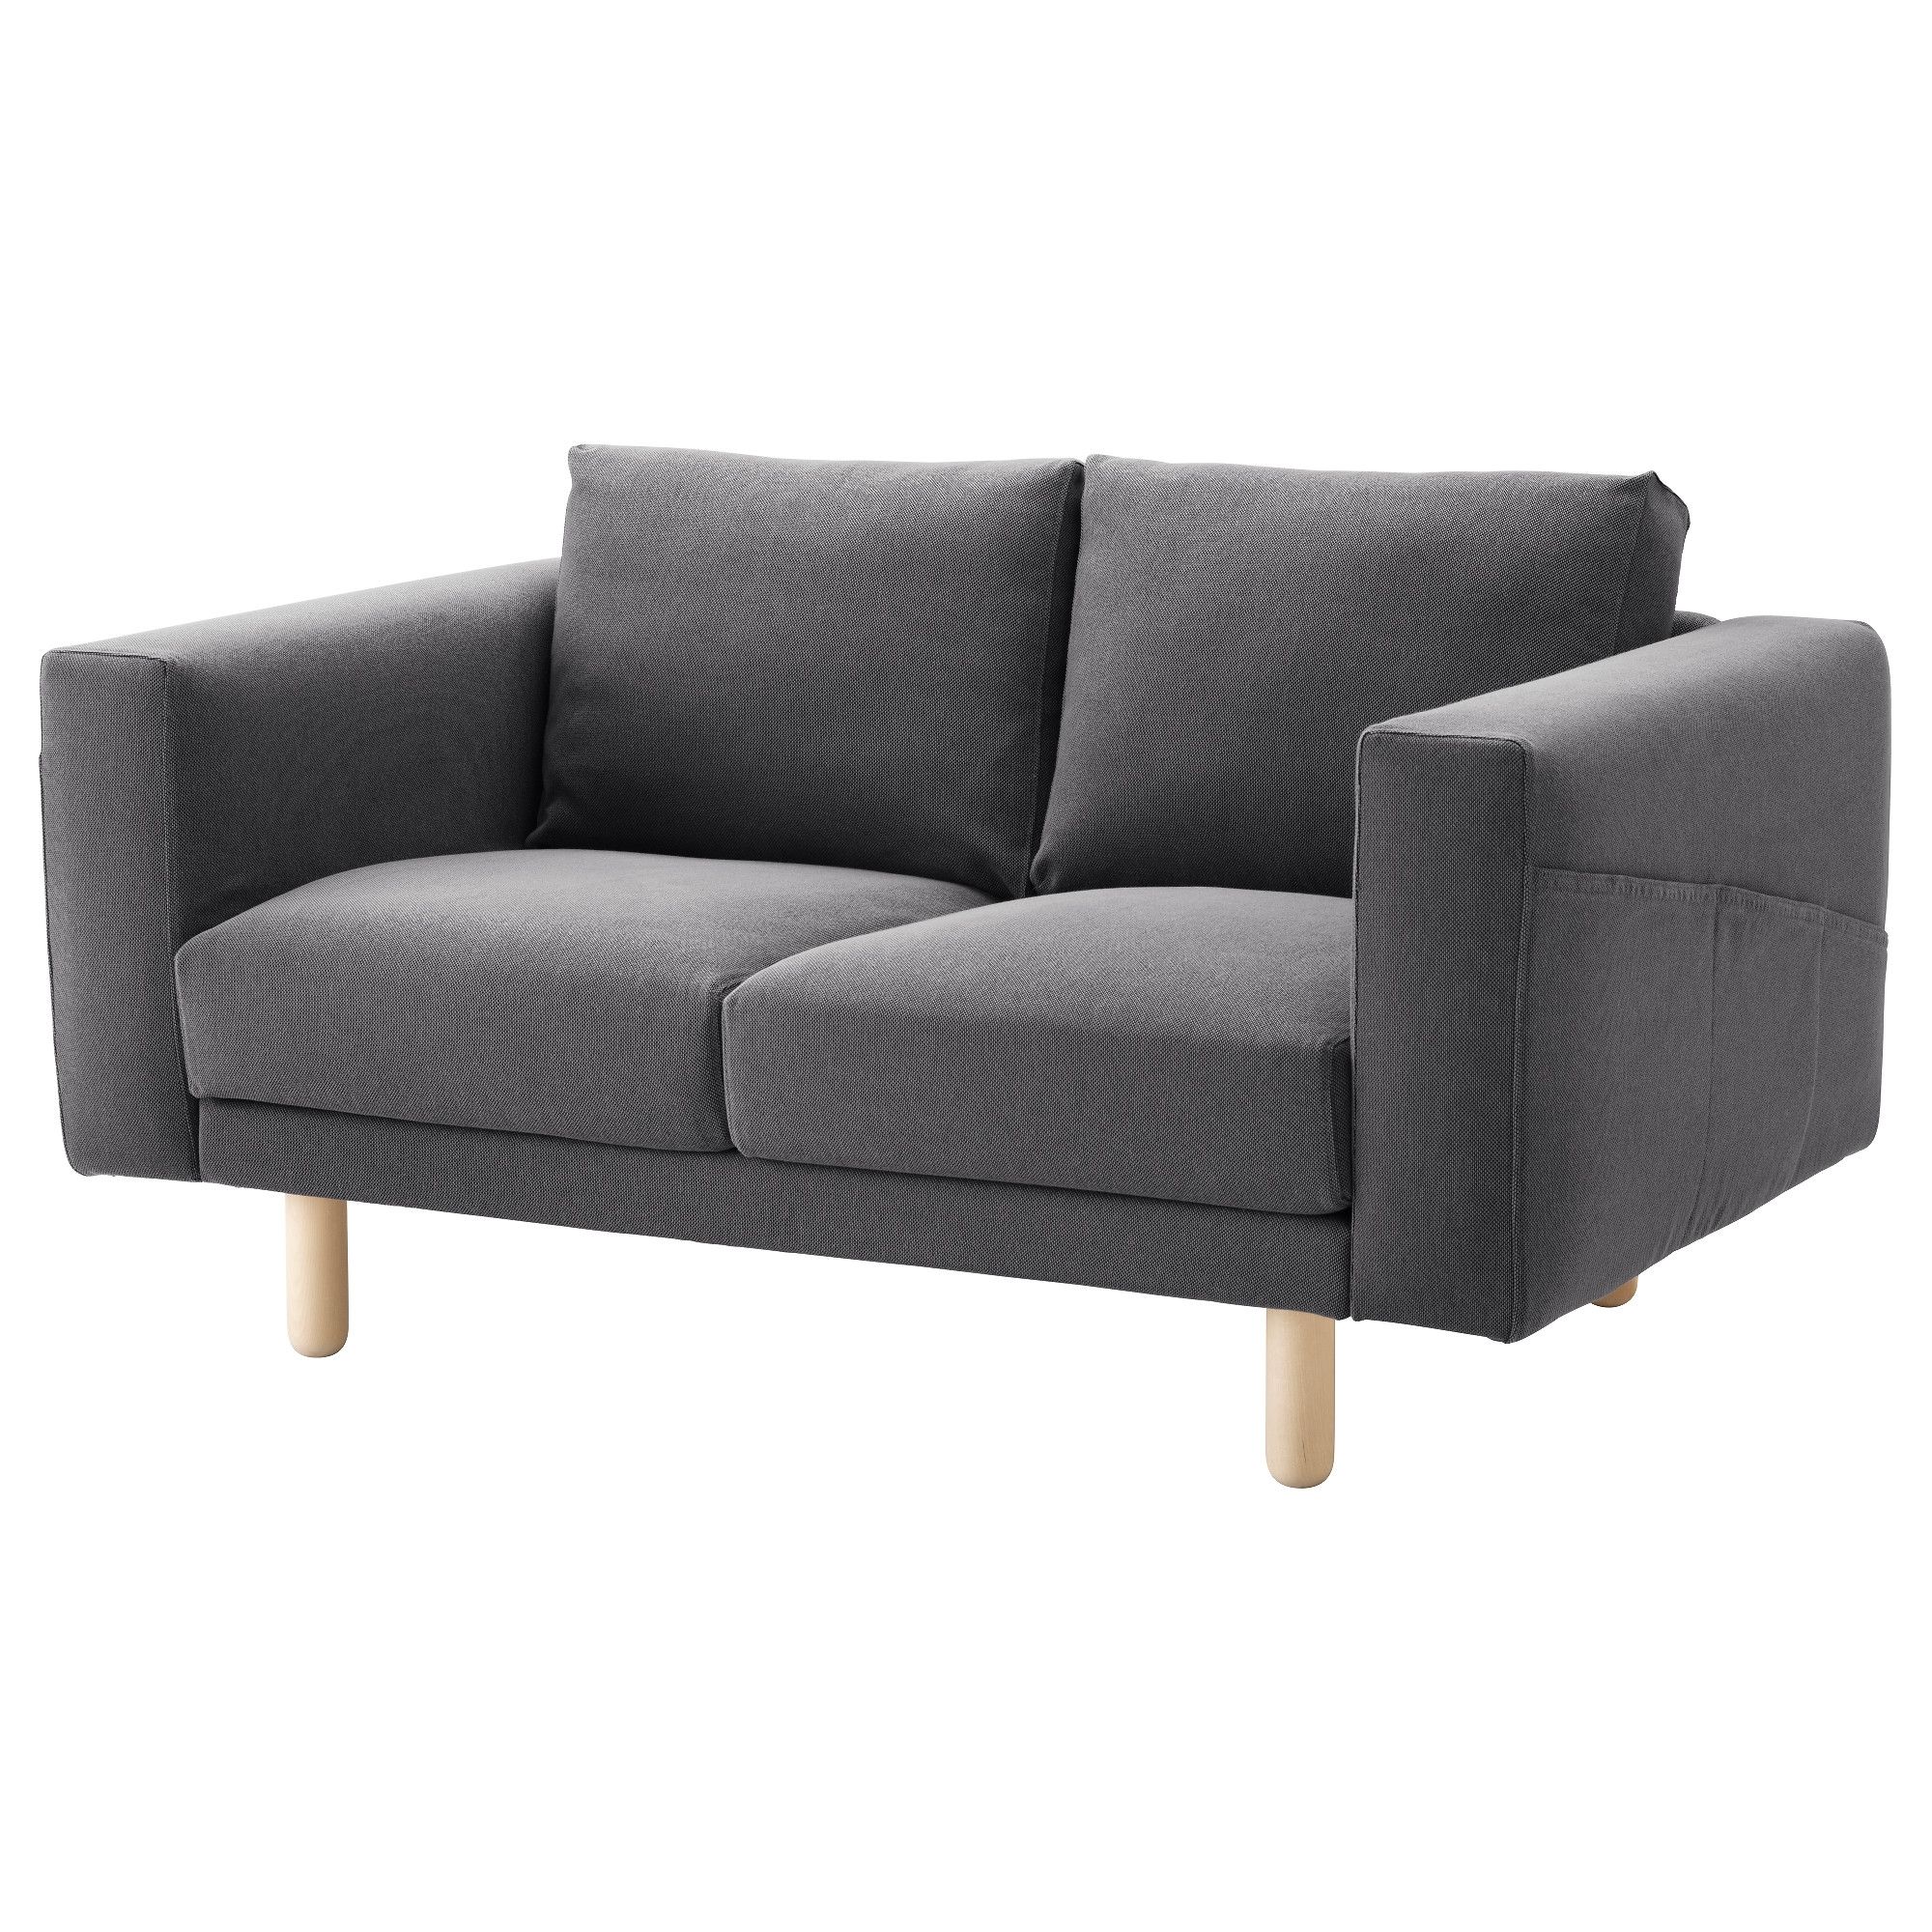 Two Seater Sofas | Ikea Ireland – Dublin In Mini Sofas (Photo 5 of 10)